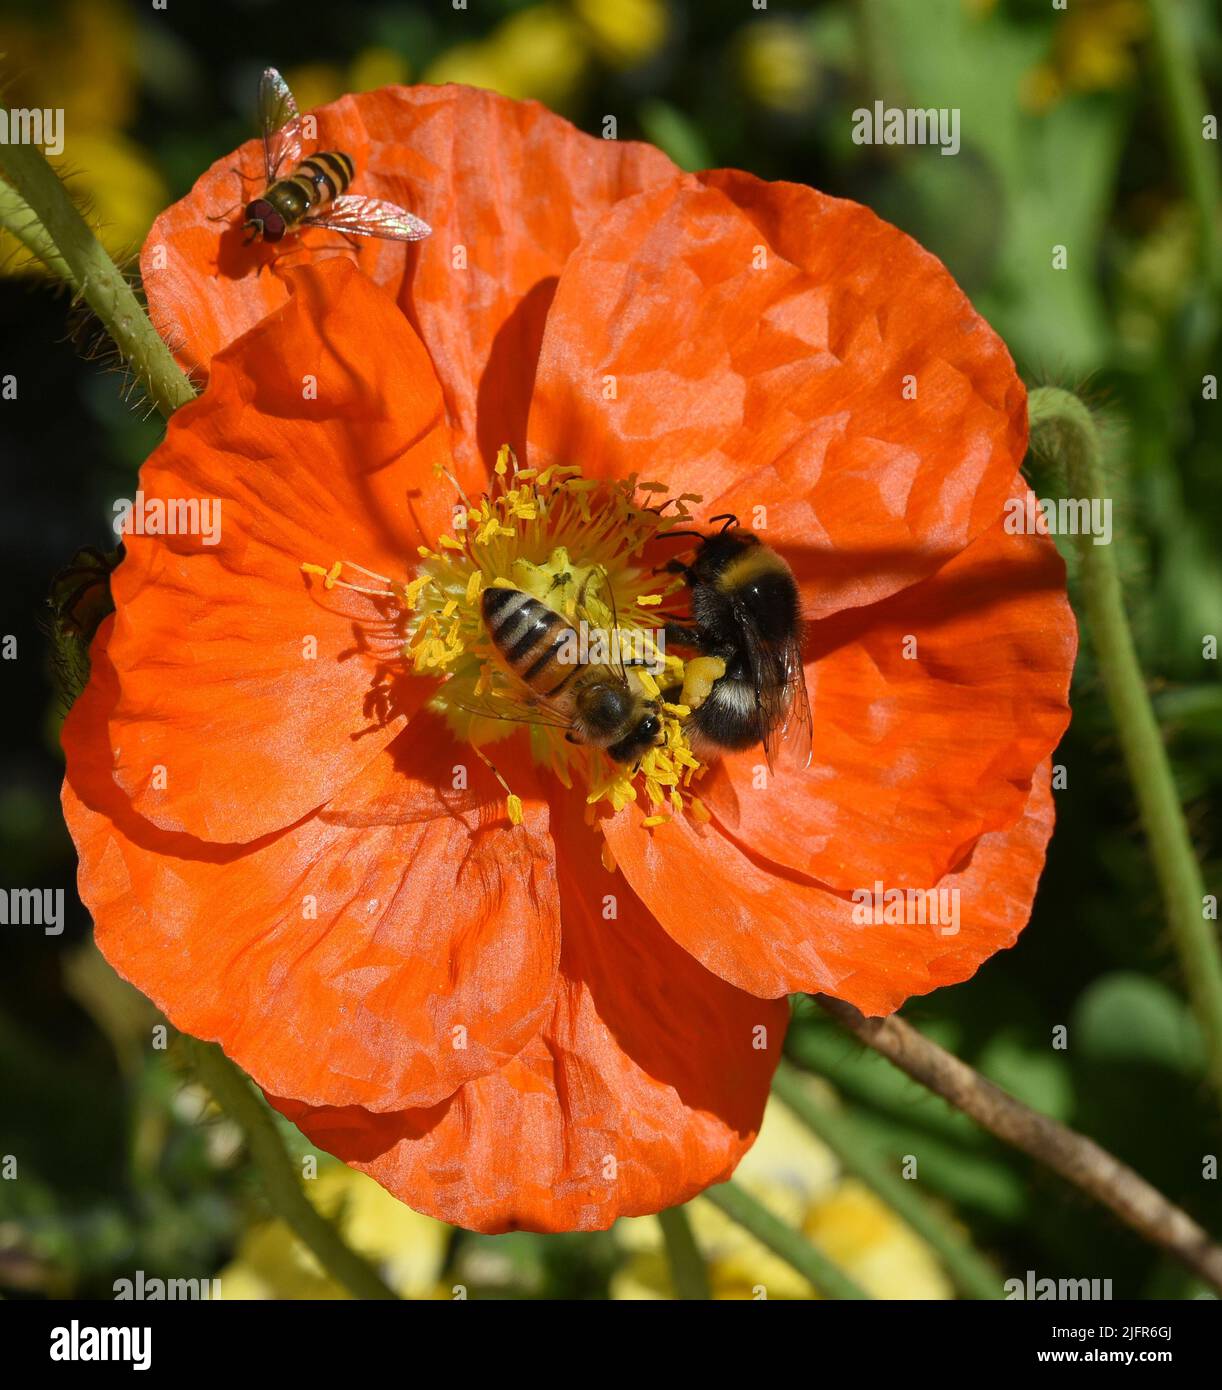 BIENE, Apis mellifera, ist ein wichtiges Insekt zur Bestaeubung von Pflanzen und zum Sammeln von Honig auf Islaendischer, Mohn, Papaver, nudicaule. Ho Foto de stock